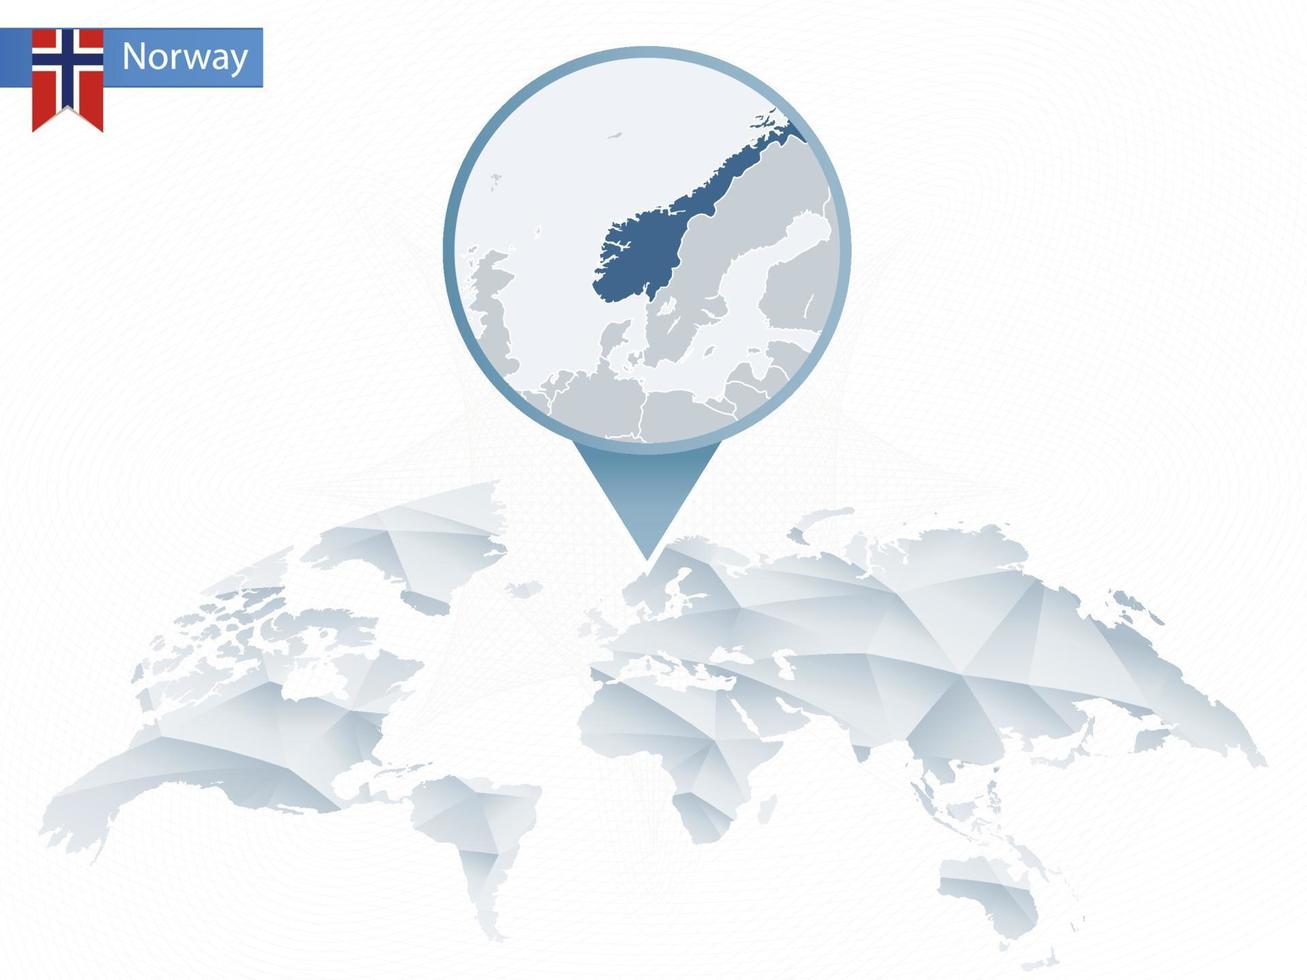 carte du monde arrondie abstraite avec carte détaillée de norvège épinglée. vecteur